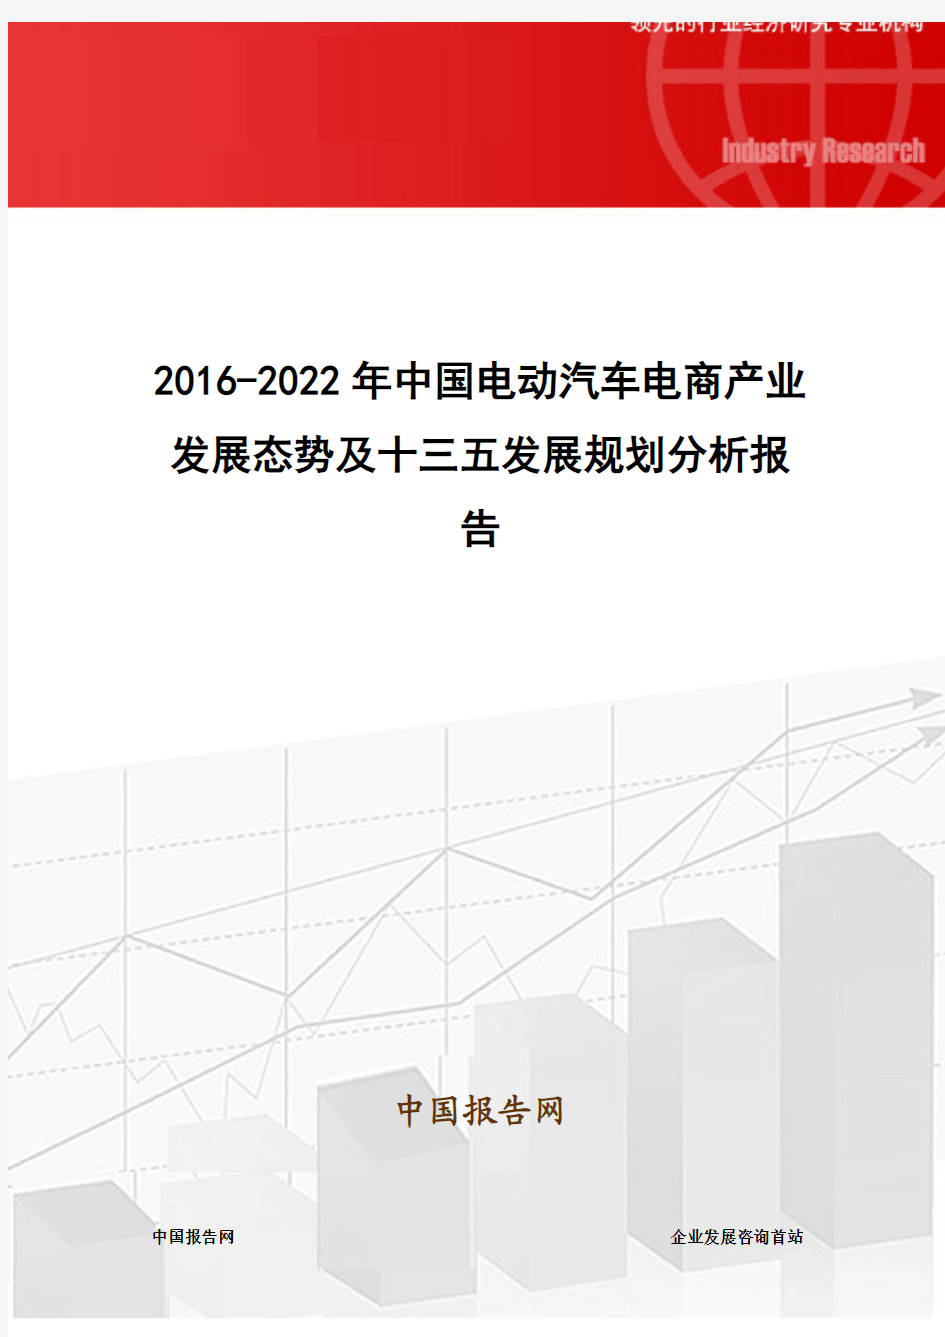 2016-2022年中国电动汽车电商产业发展态势及十三五发展规划分析报告